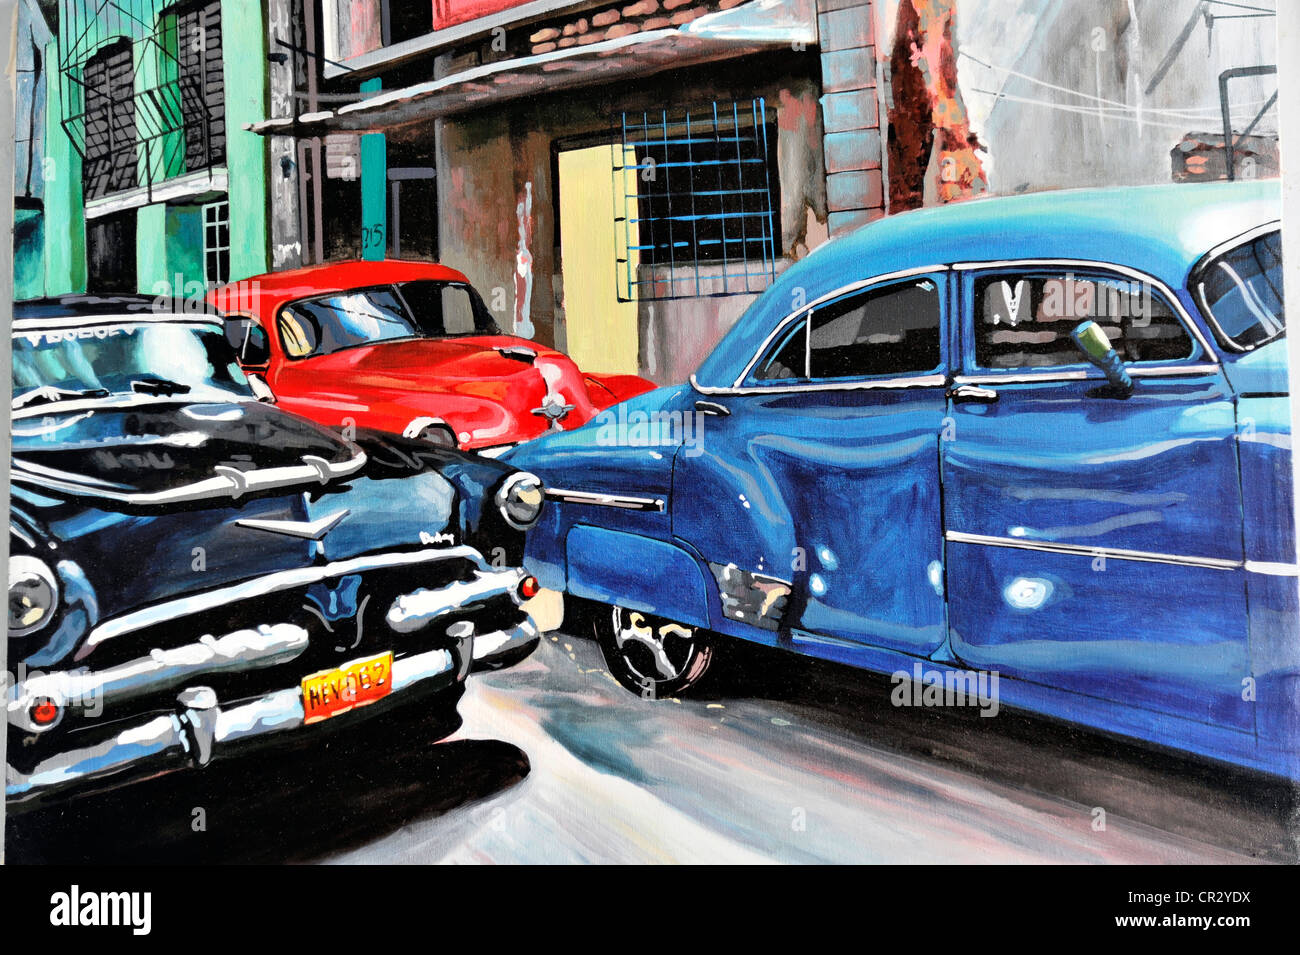 Peinture, peinture à l'huile, voitures, vintage ou voitures classiques des années 50, souvenirs, Trinidad, Cuba, Antilles, Caraïbes Banque D'Images